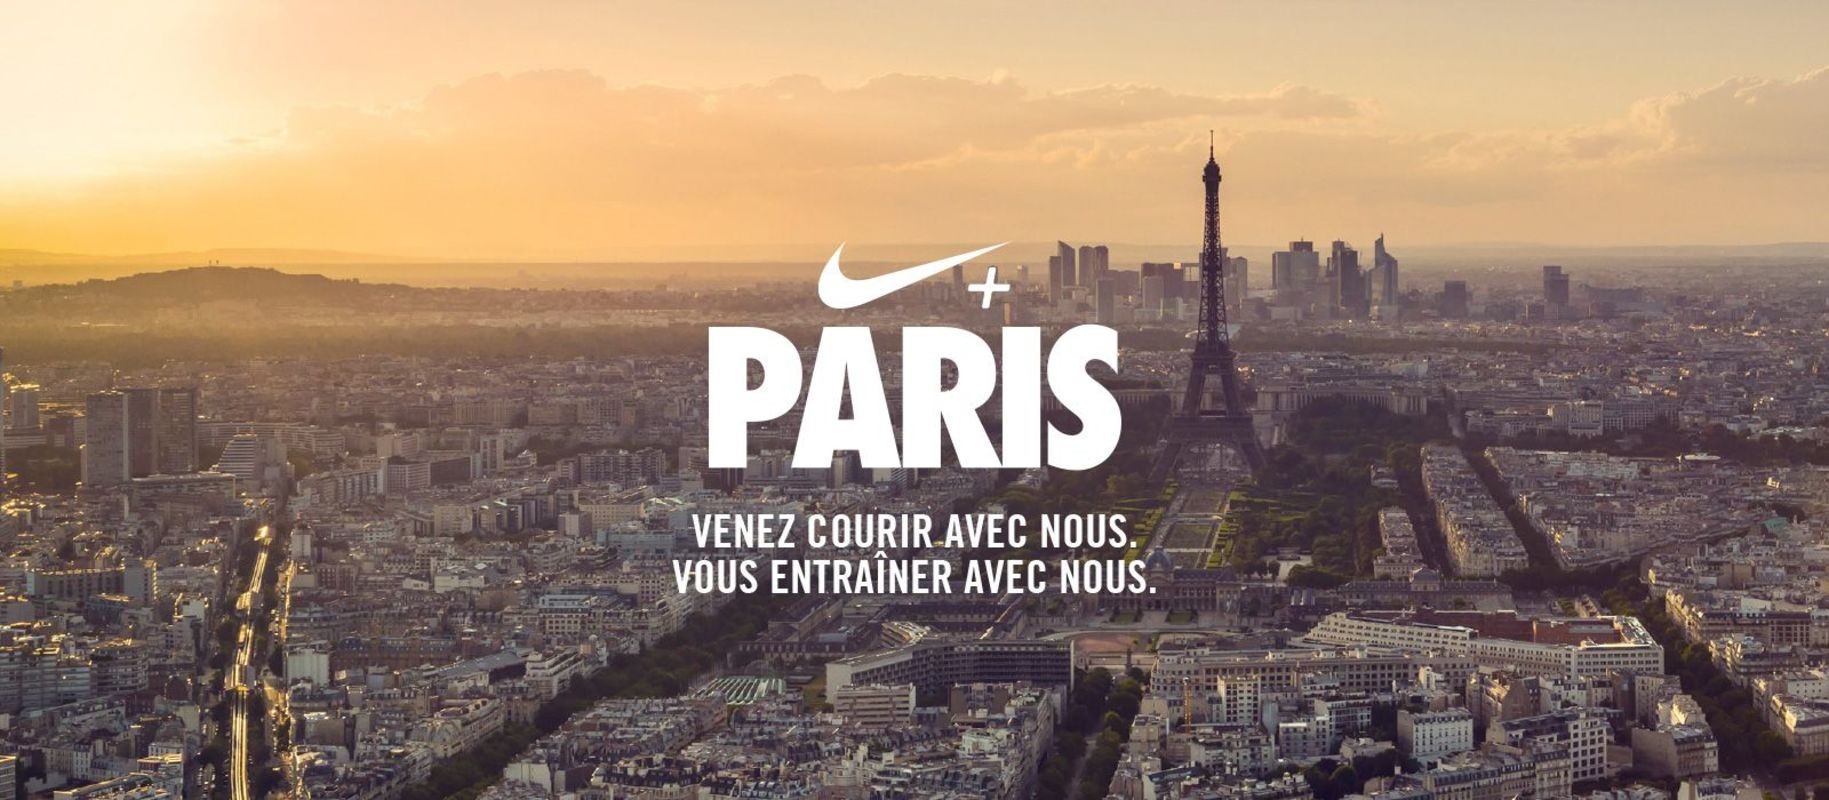 Nike откроют новое пространство рядом с Триумфальной аркой в Париже